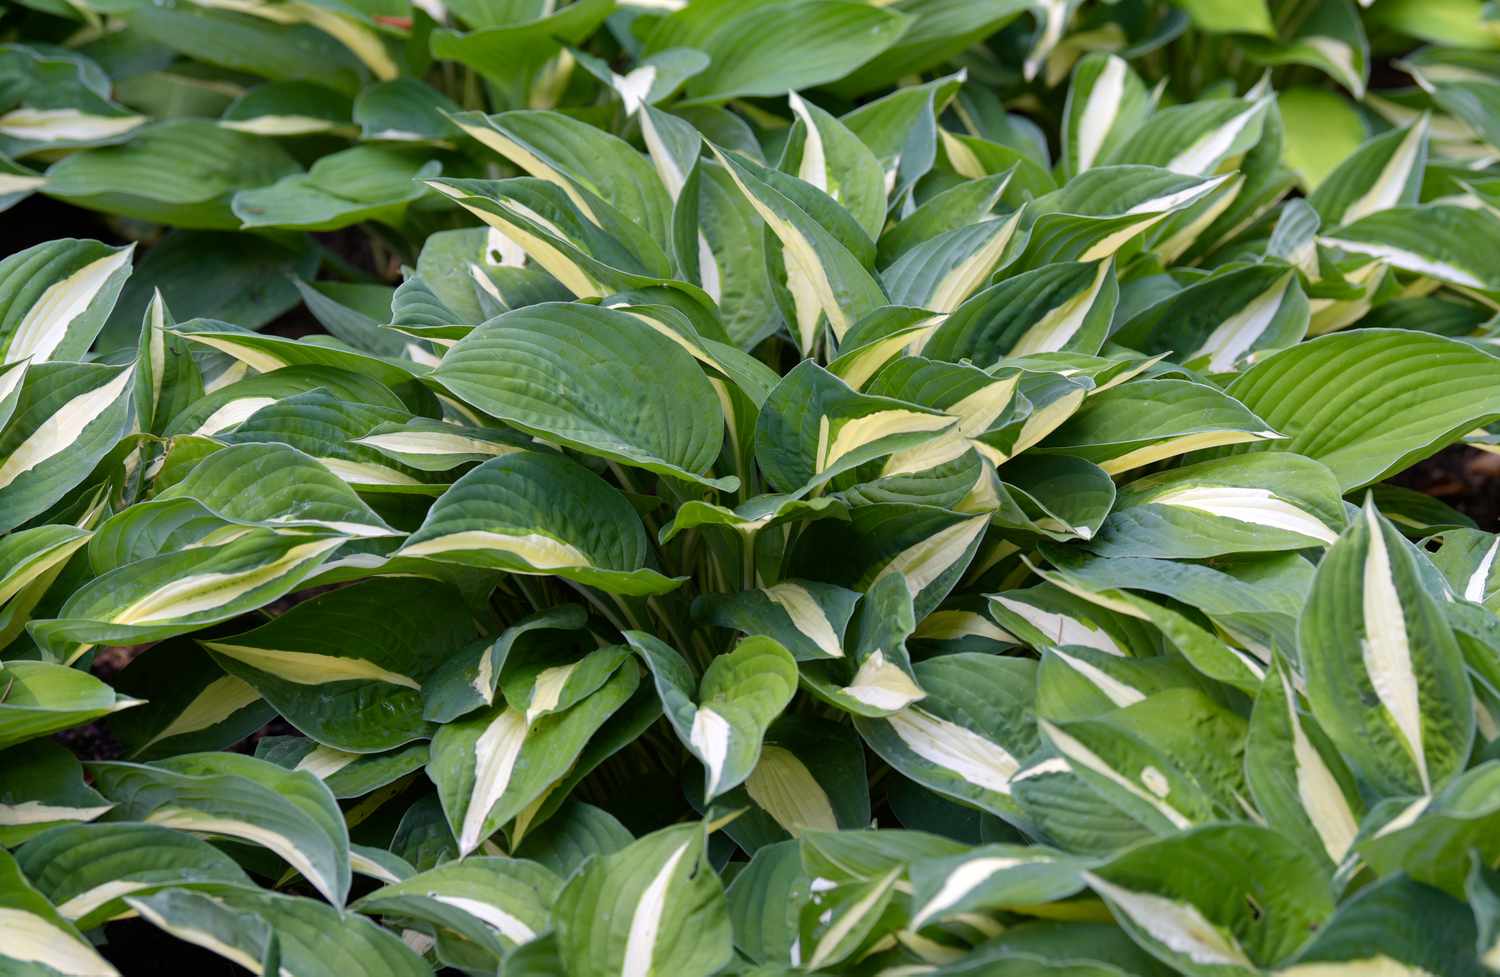 Hosta-Pflanze mit bunten weißen, gelben und grünen Blättern in Nahaufnahme